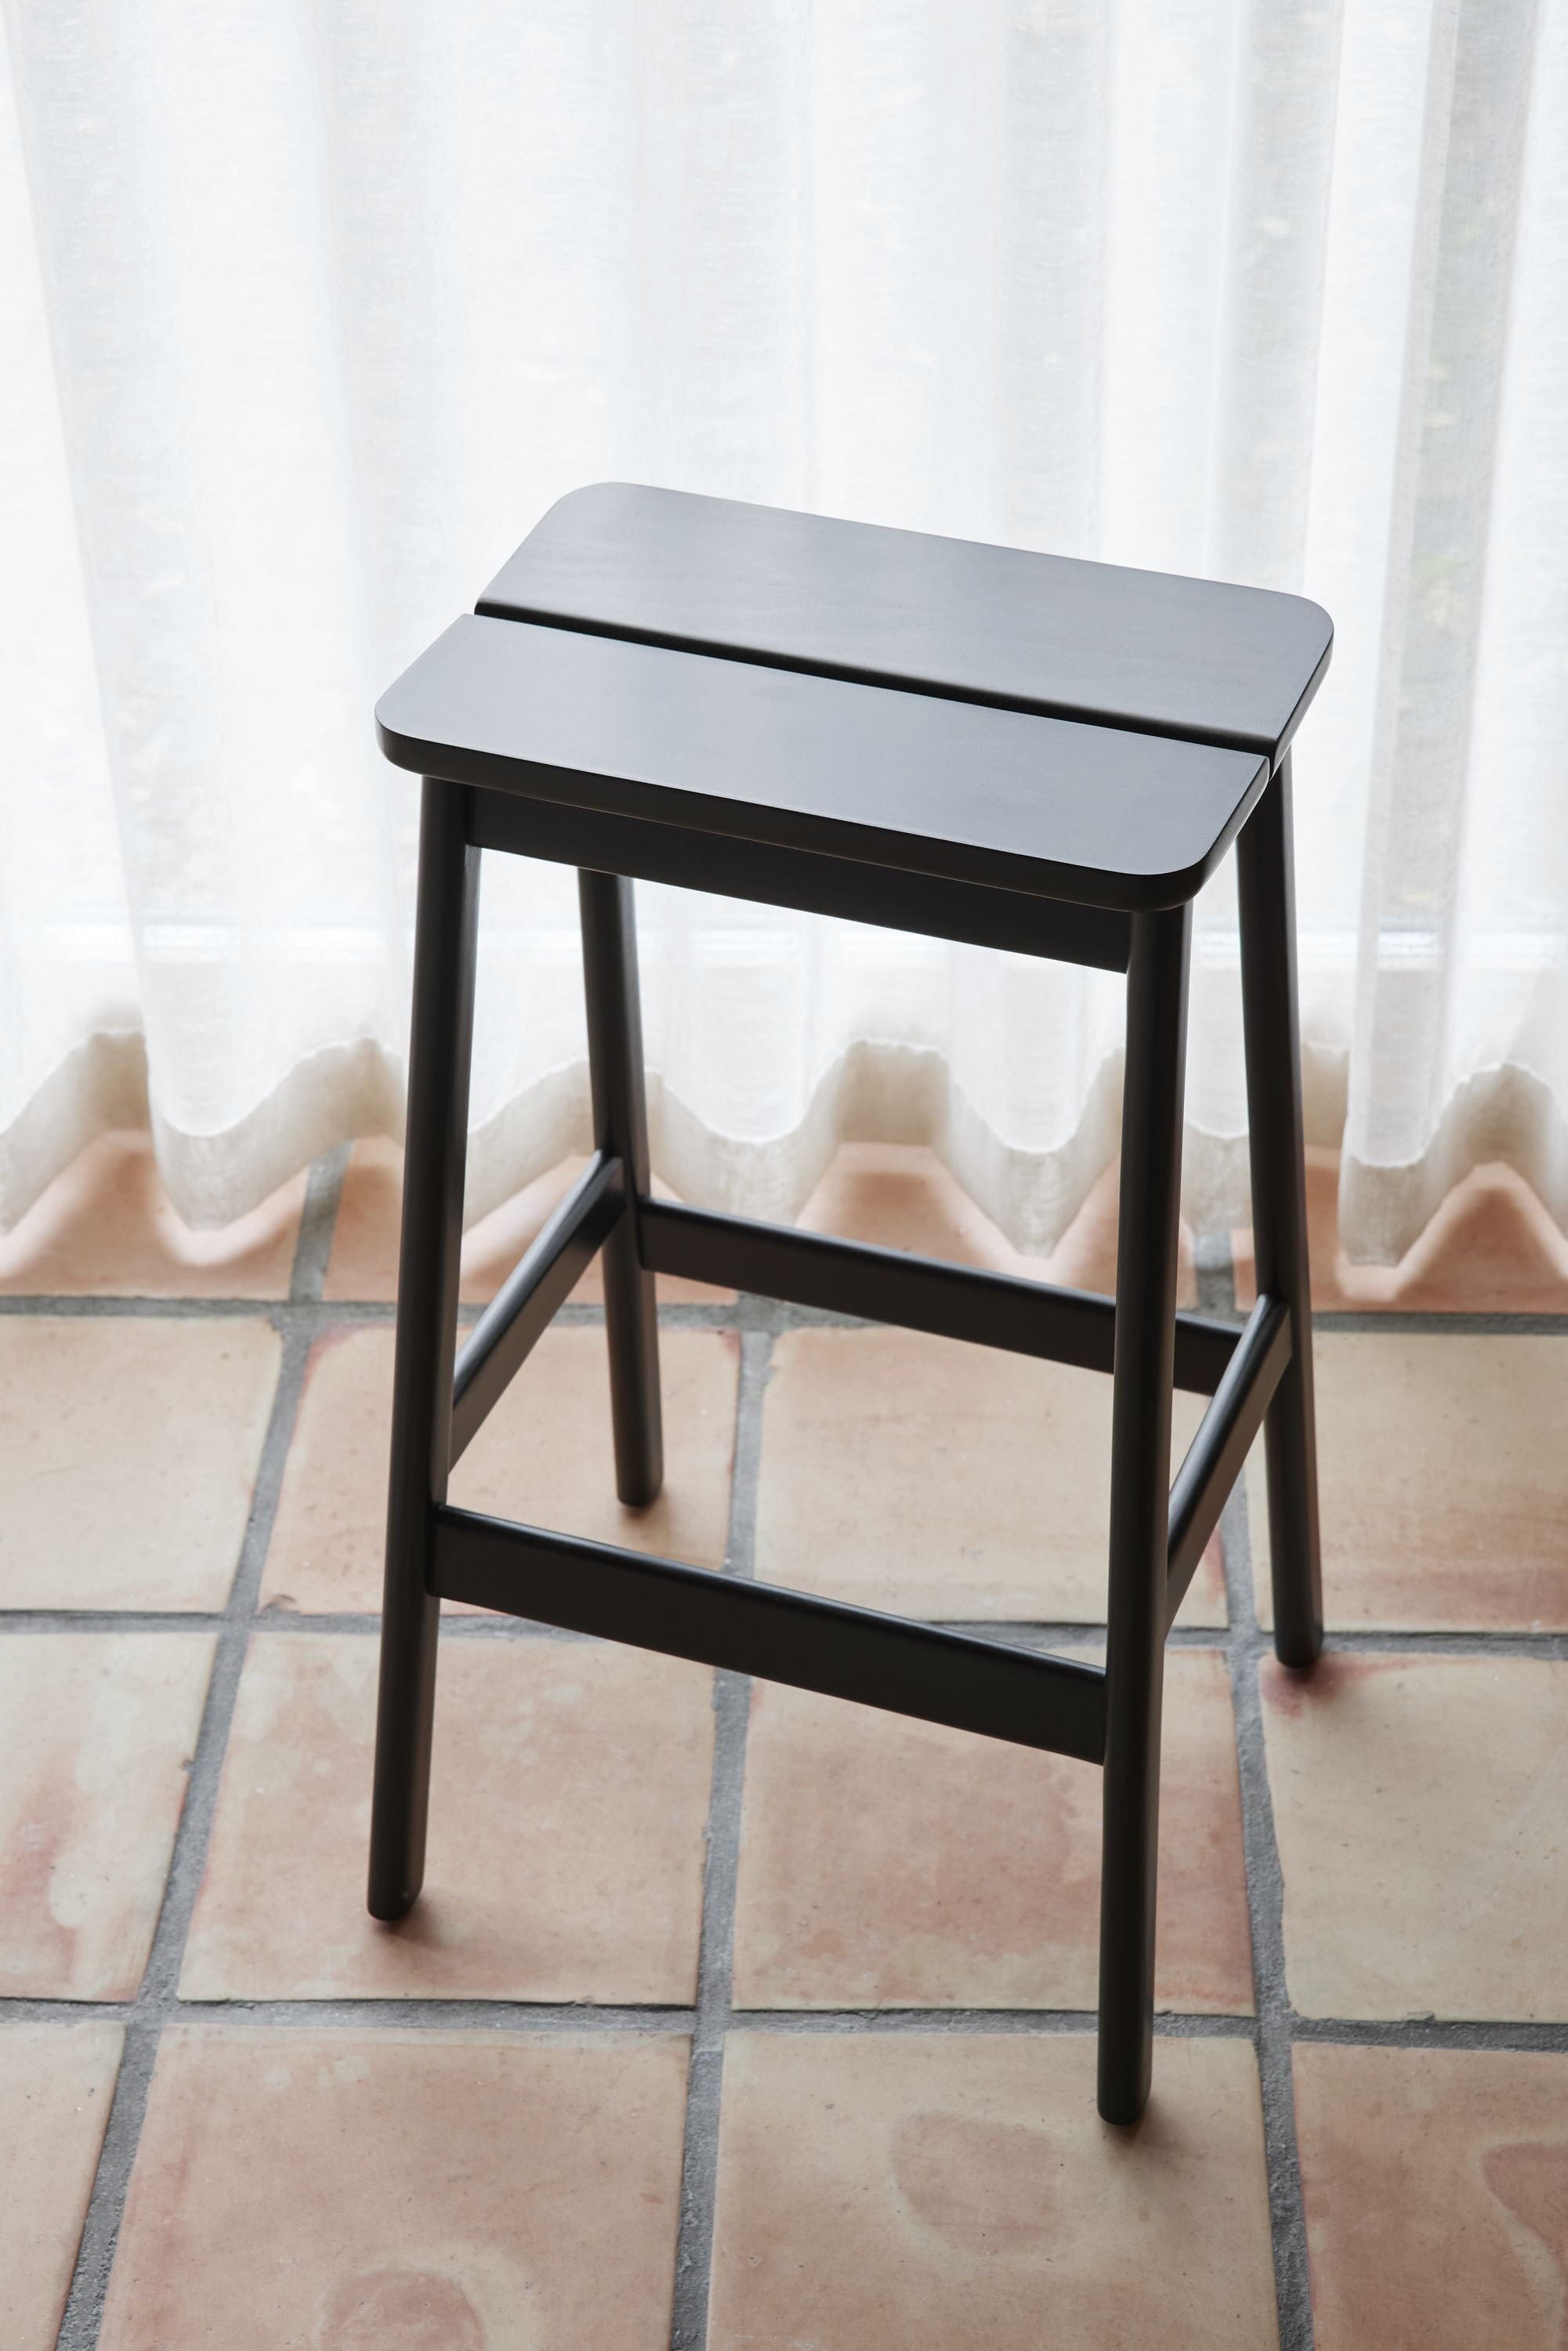 Form & Refine Kąt standardowy stołek barowy 65 cm. Czarny buk